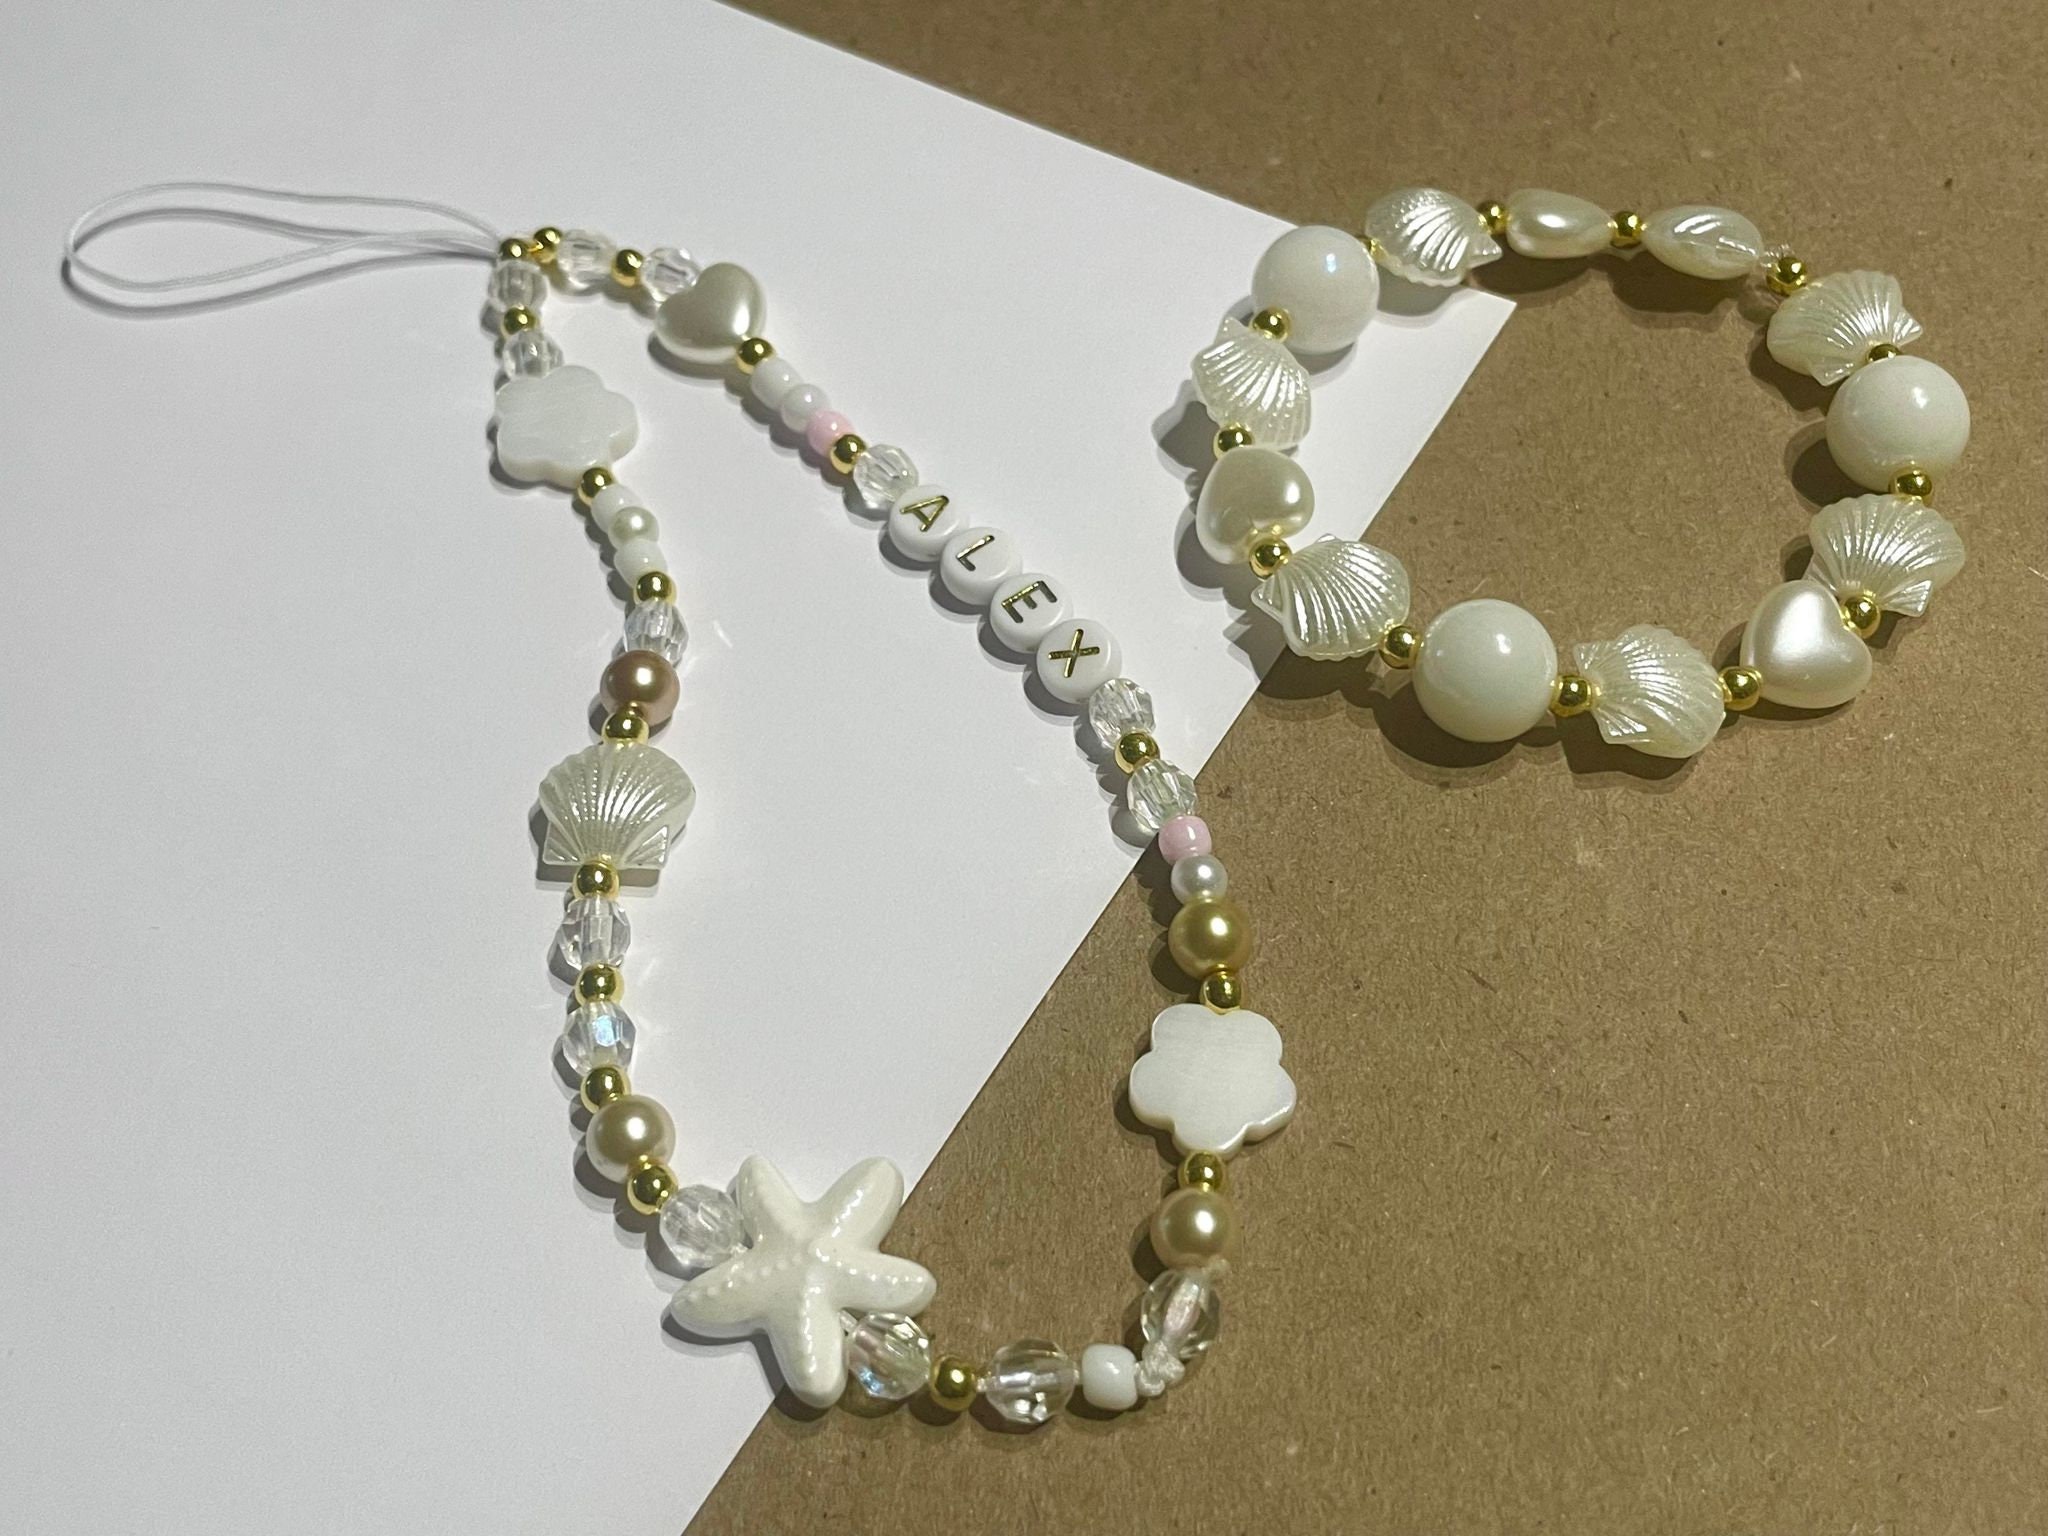 Mohan Shoppe on Instagram: Marble Beads For bracelets ♥️ #beads